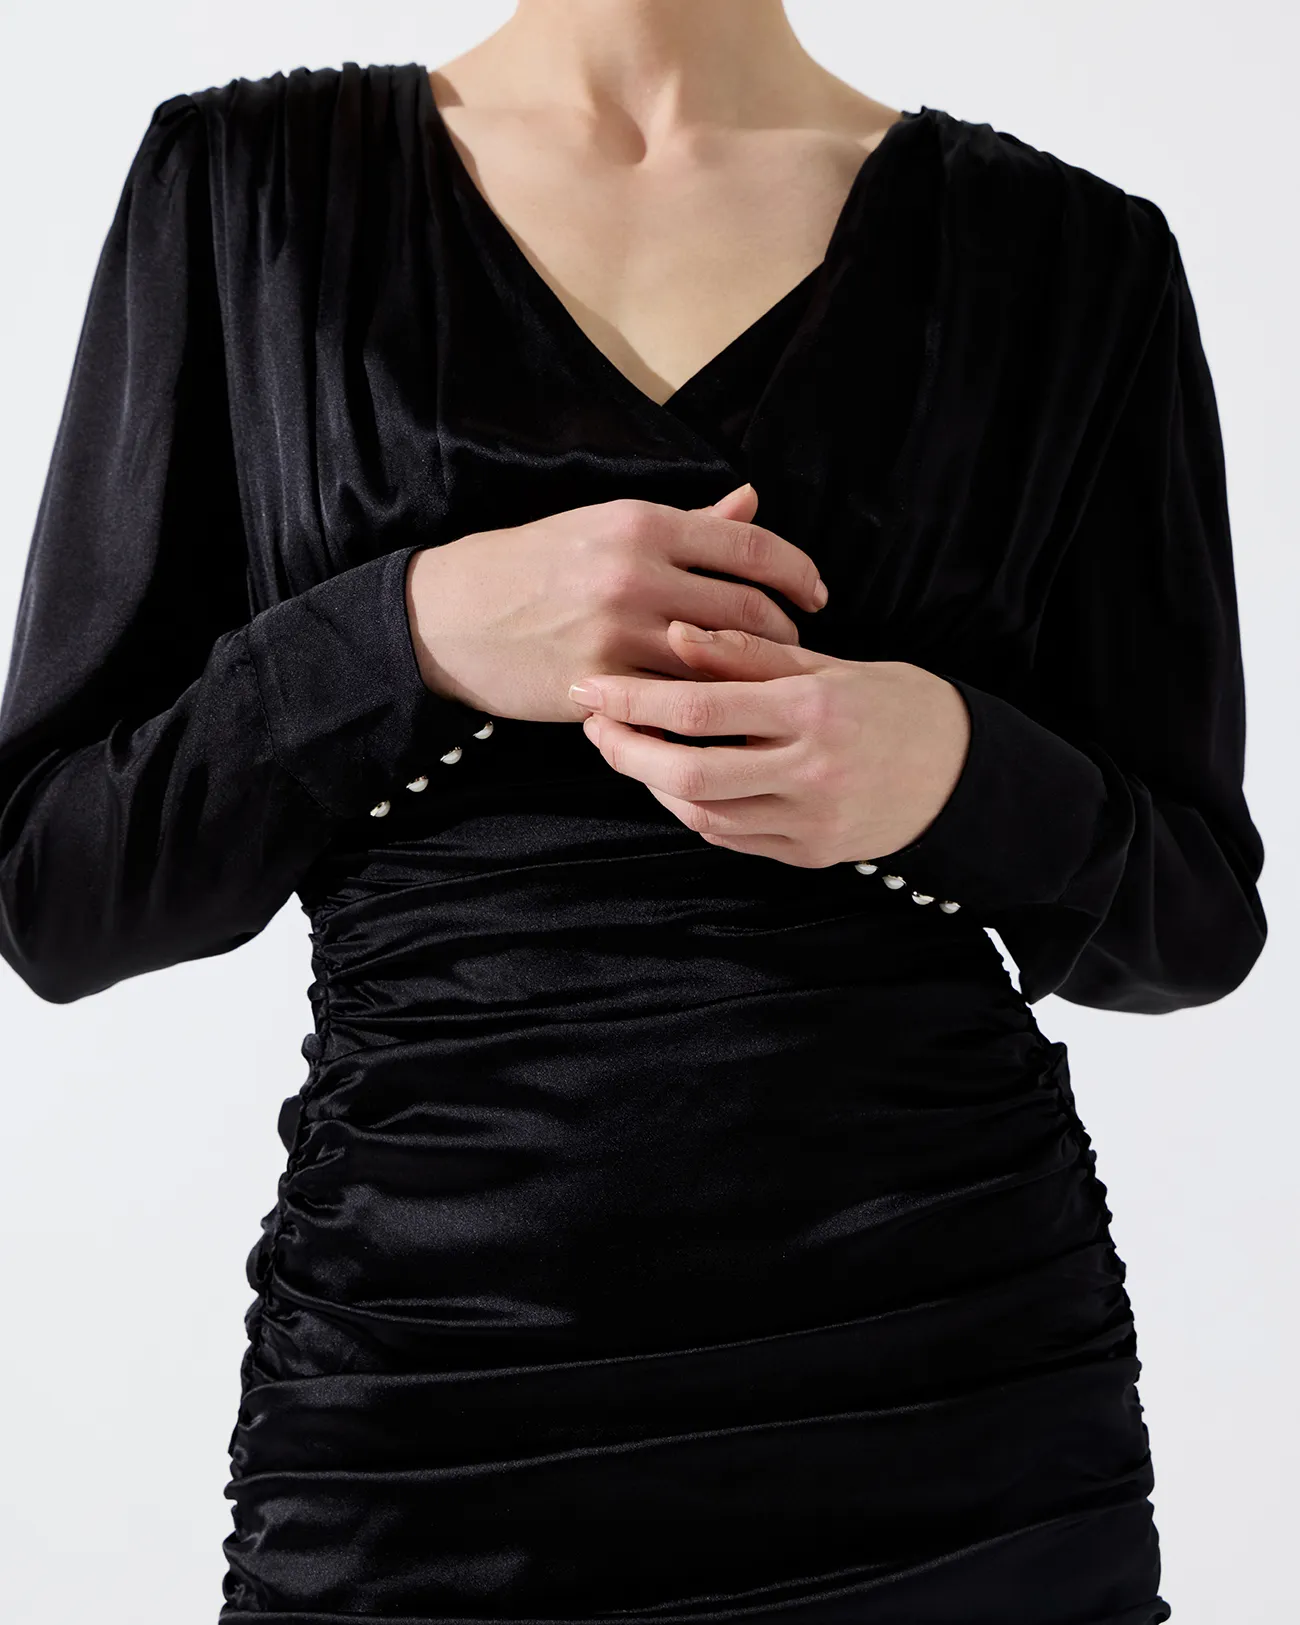 Платье мини драпированное черного цвета